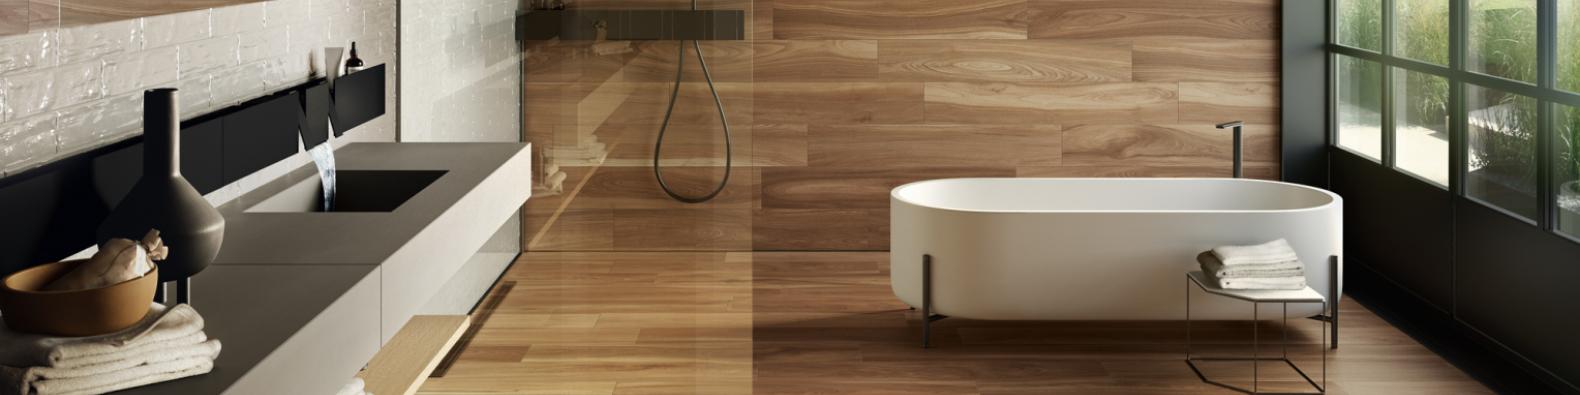 Płytki do łazienki imitujące drewno – zalety i wady